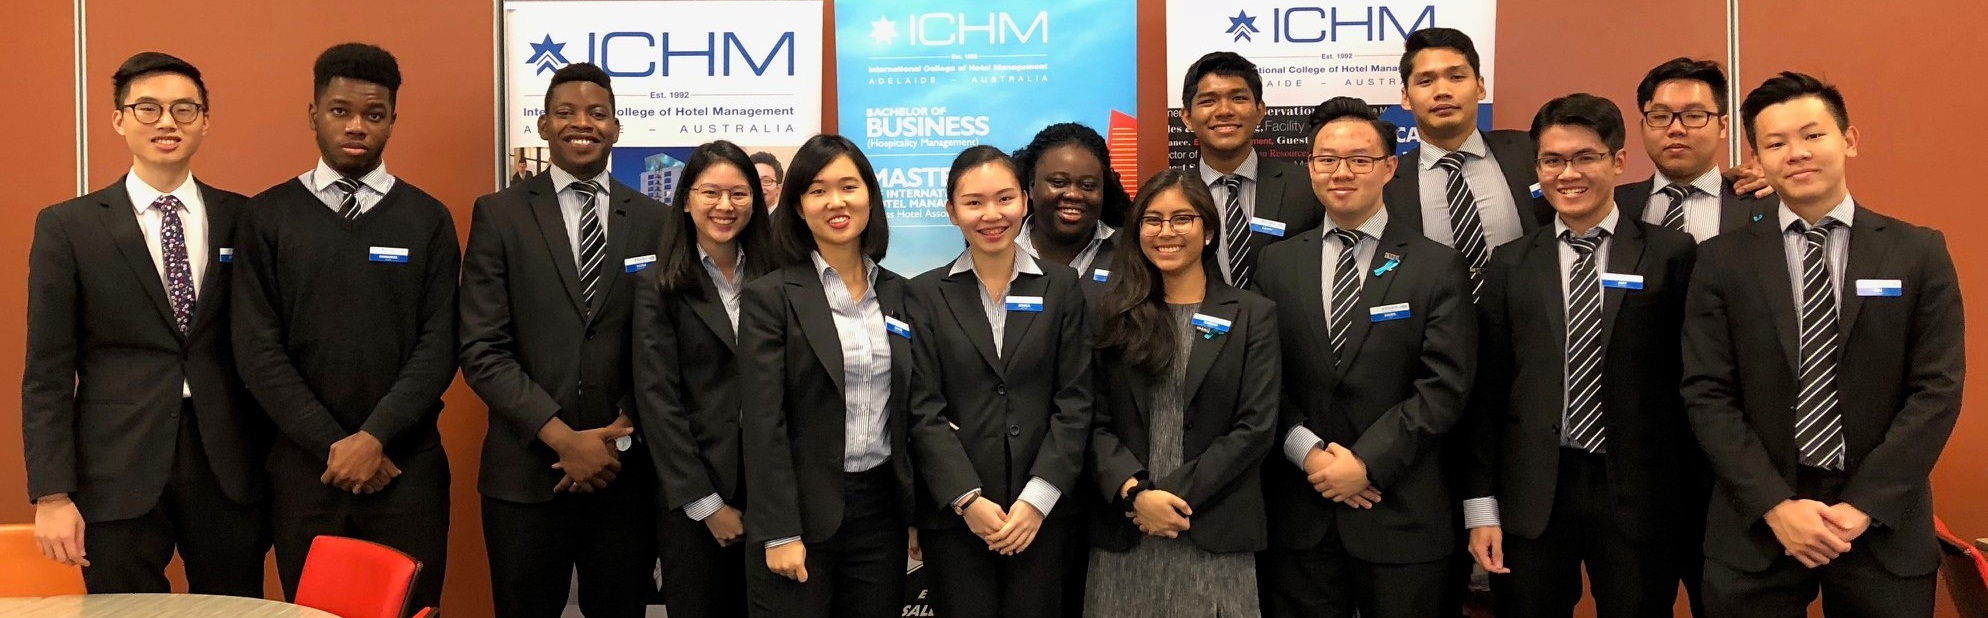 International College of Hotel Management (ICHM), Australia